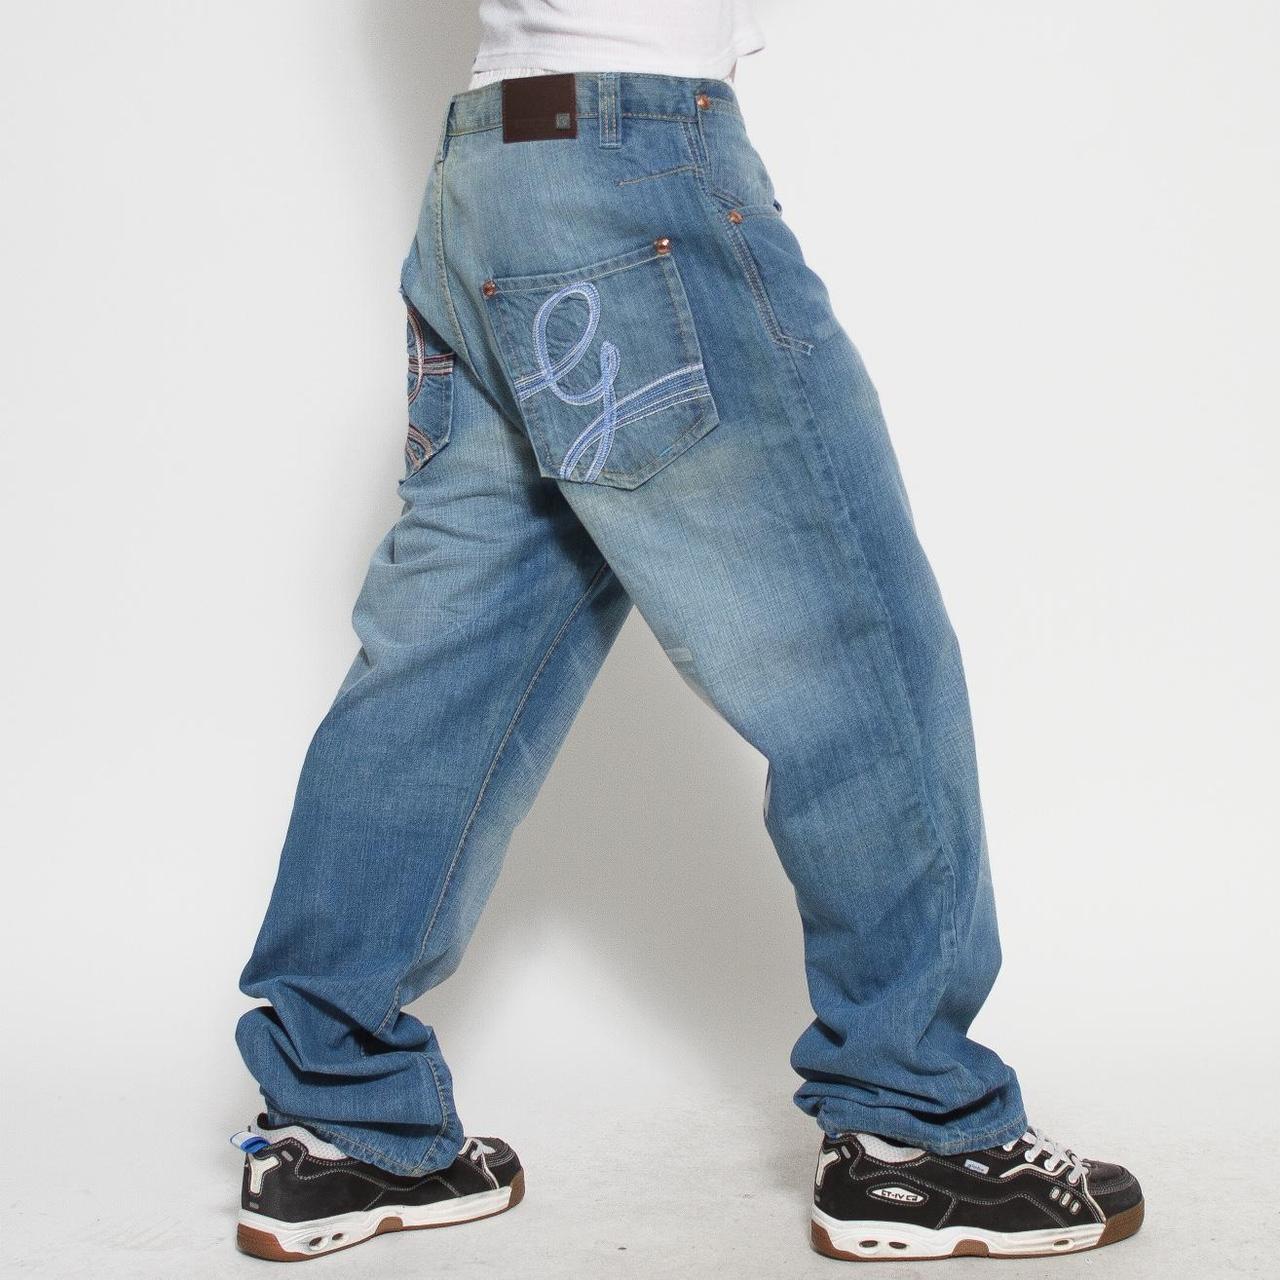 Deadstock 90s denim pants by G Unit. NWT. Blue jean... - Depop